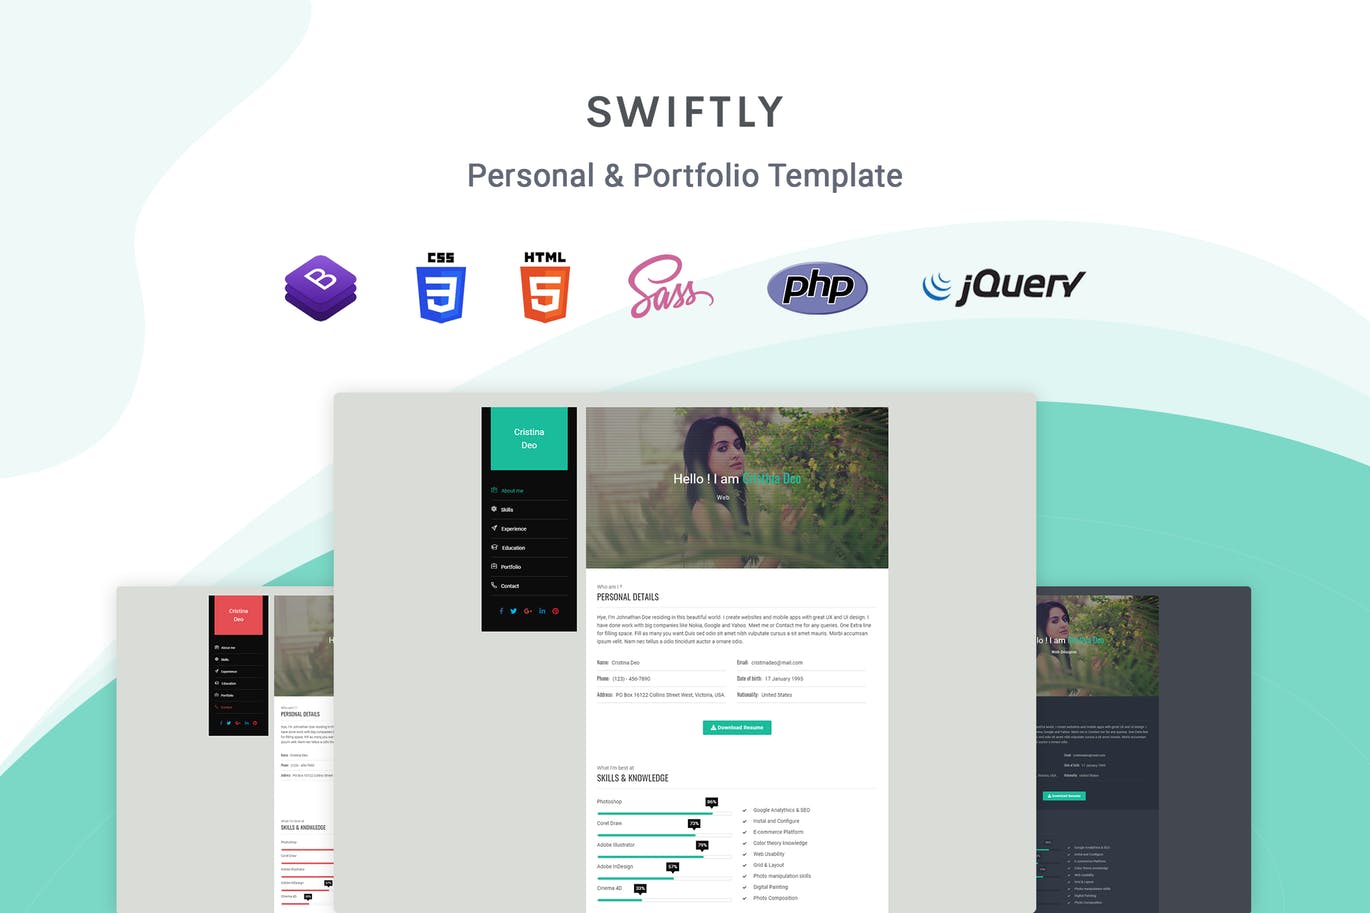 个人在线简历&作品集博客网站HTML模板第一素材精选 Swiftly – Personal & Portfolio Template插图